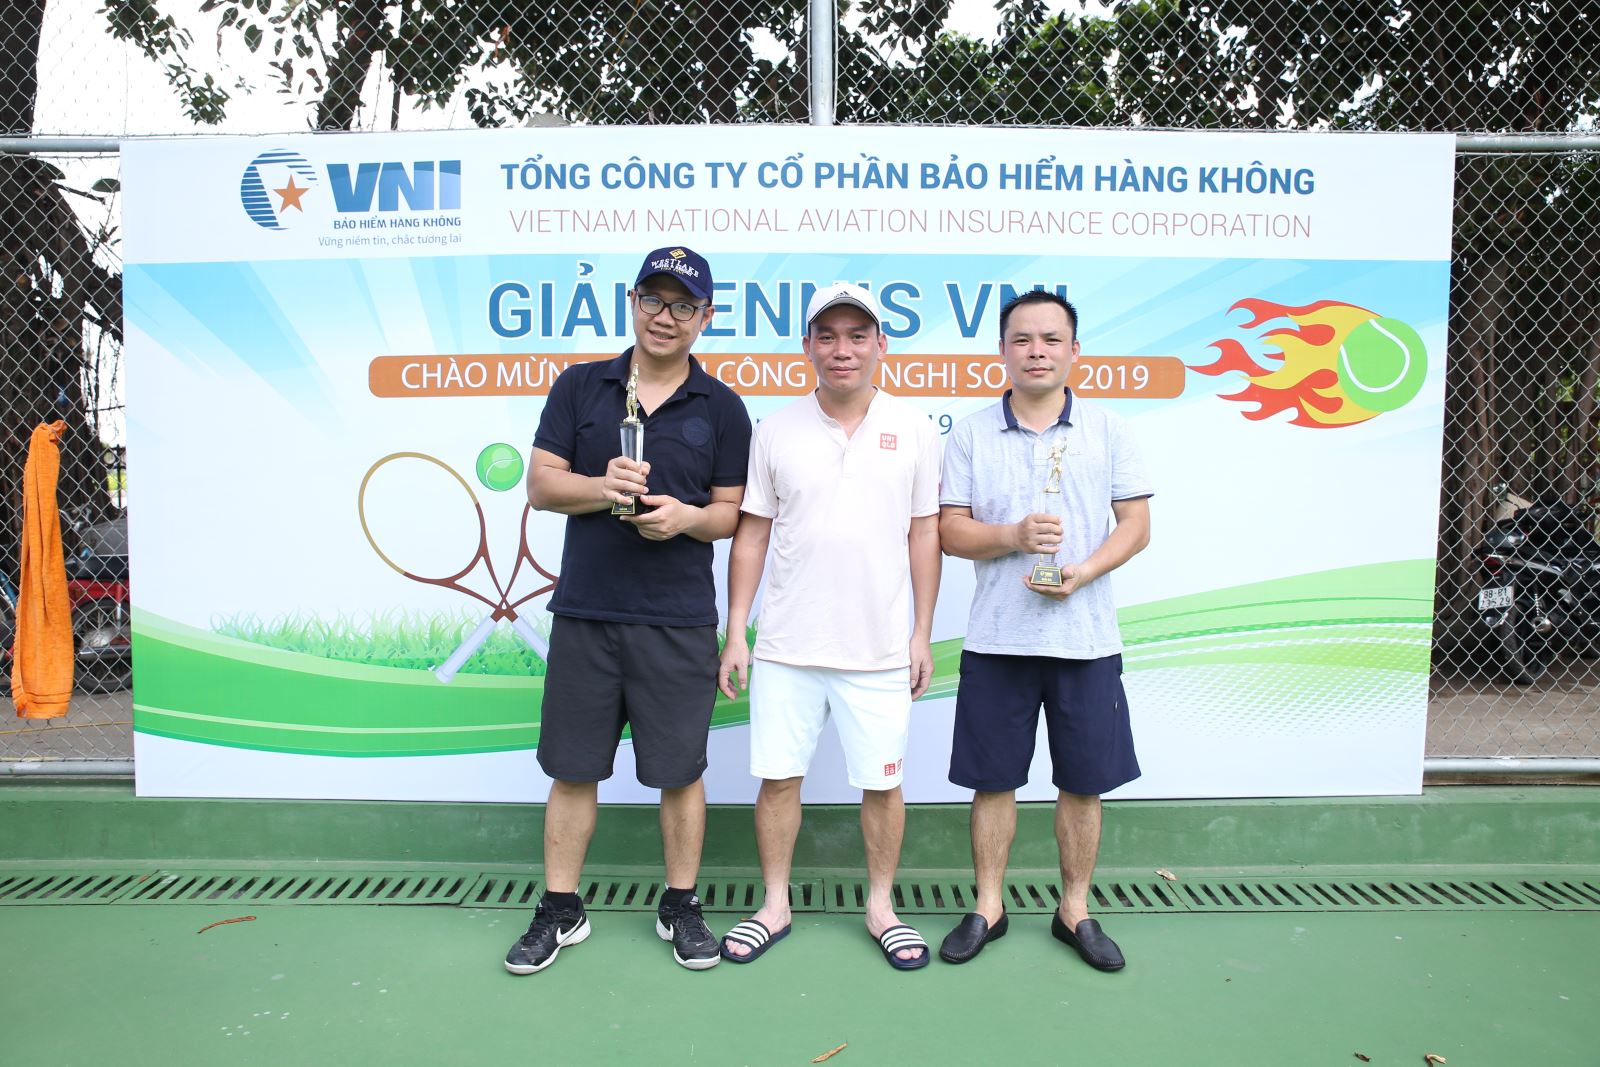 Giải tennis VNI chào mừng thành công Hội nghị sơ kết 2019